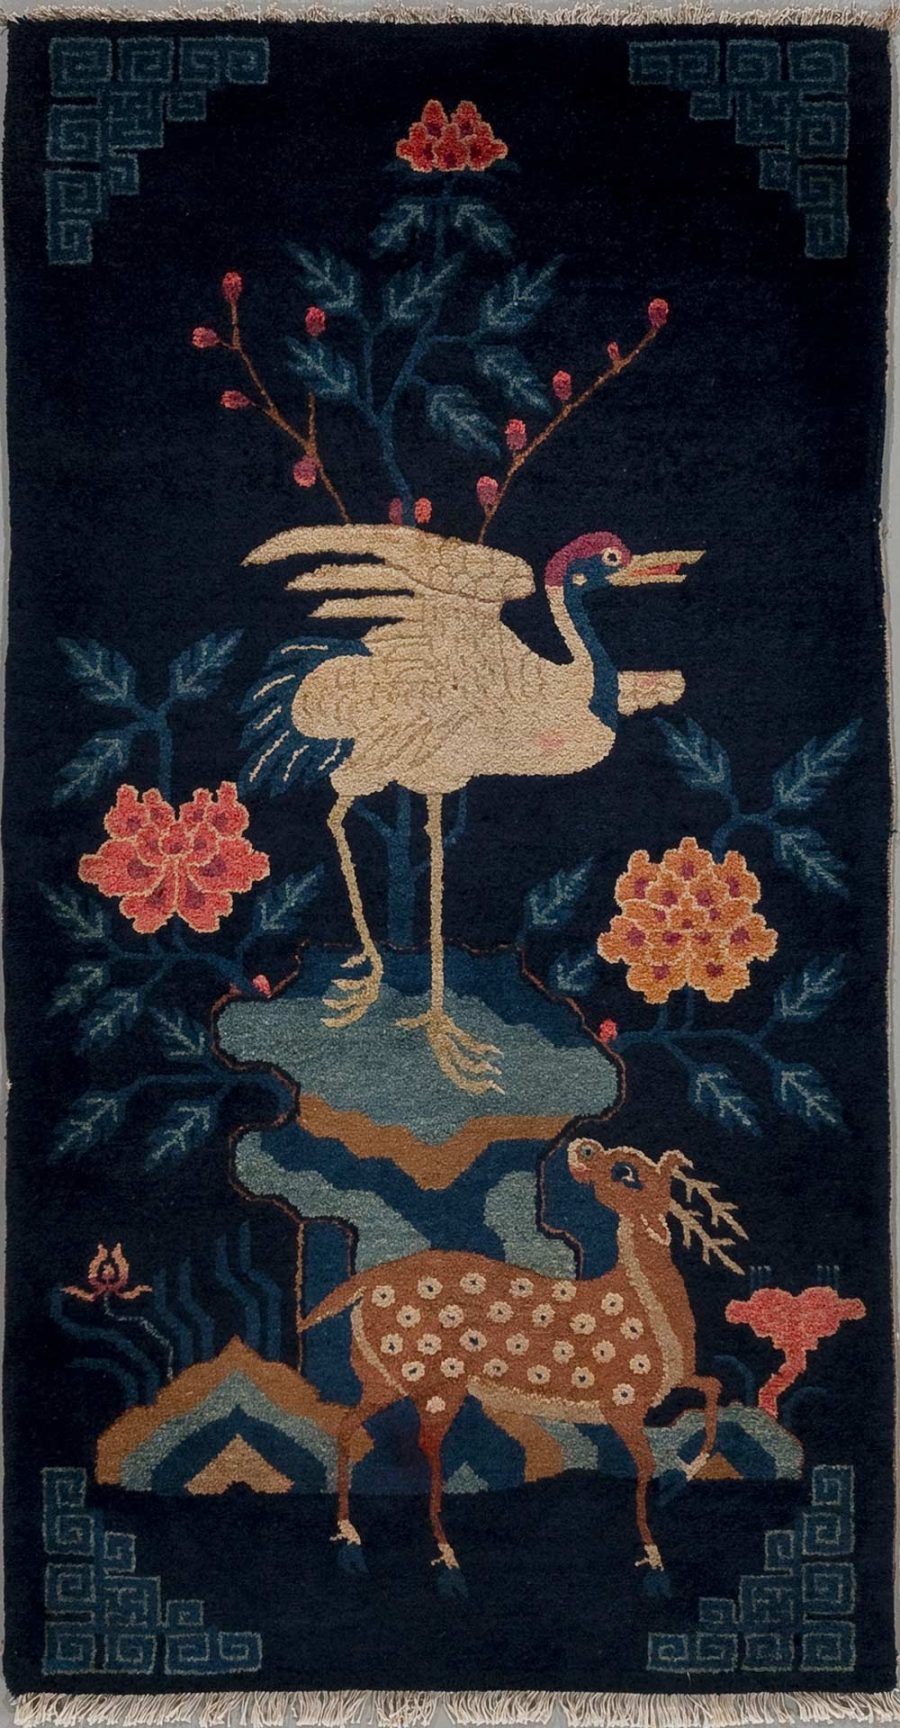 Asiatischer Stil Wandteppich mit der Darstellung eines Kranichs auf einem Hirsch neben Pfingstrosen und geometrischen Mustern auf dunkelblauem Hintergrund.